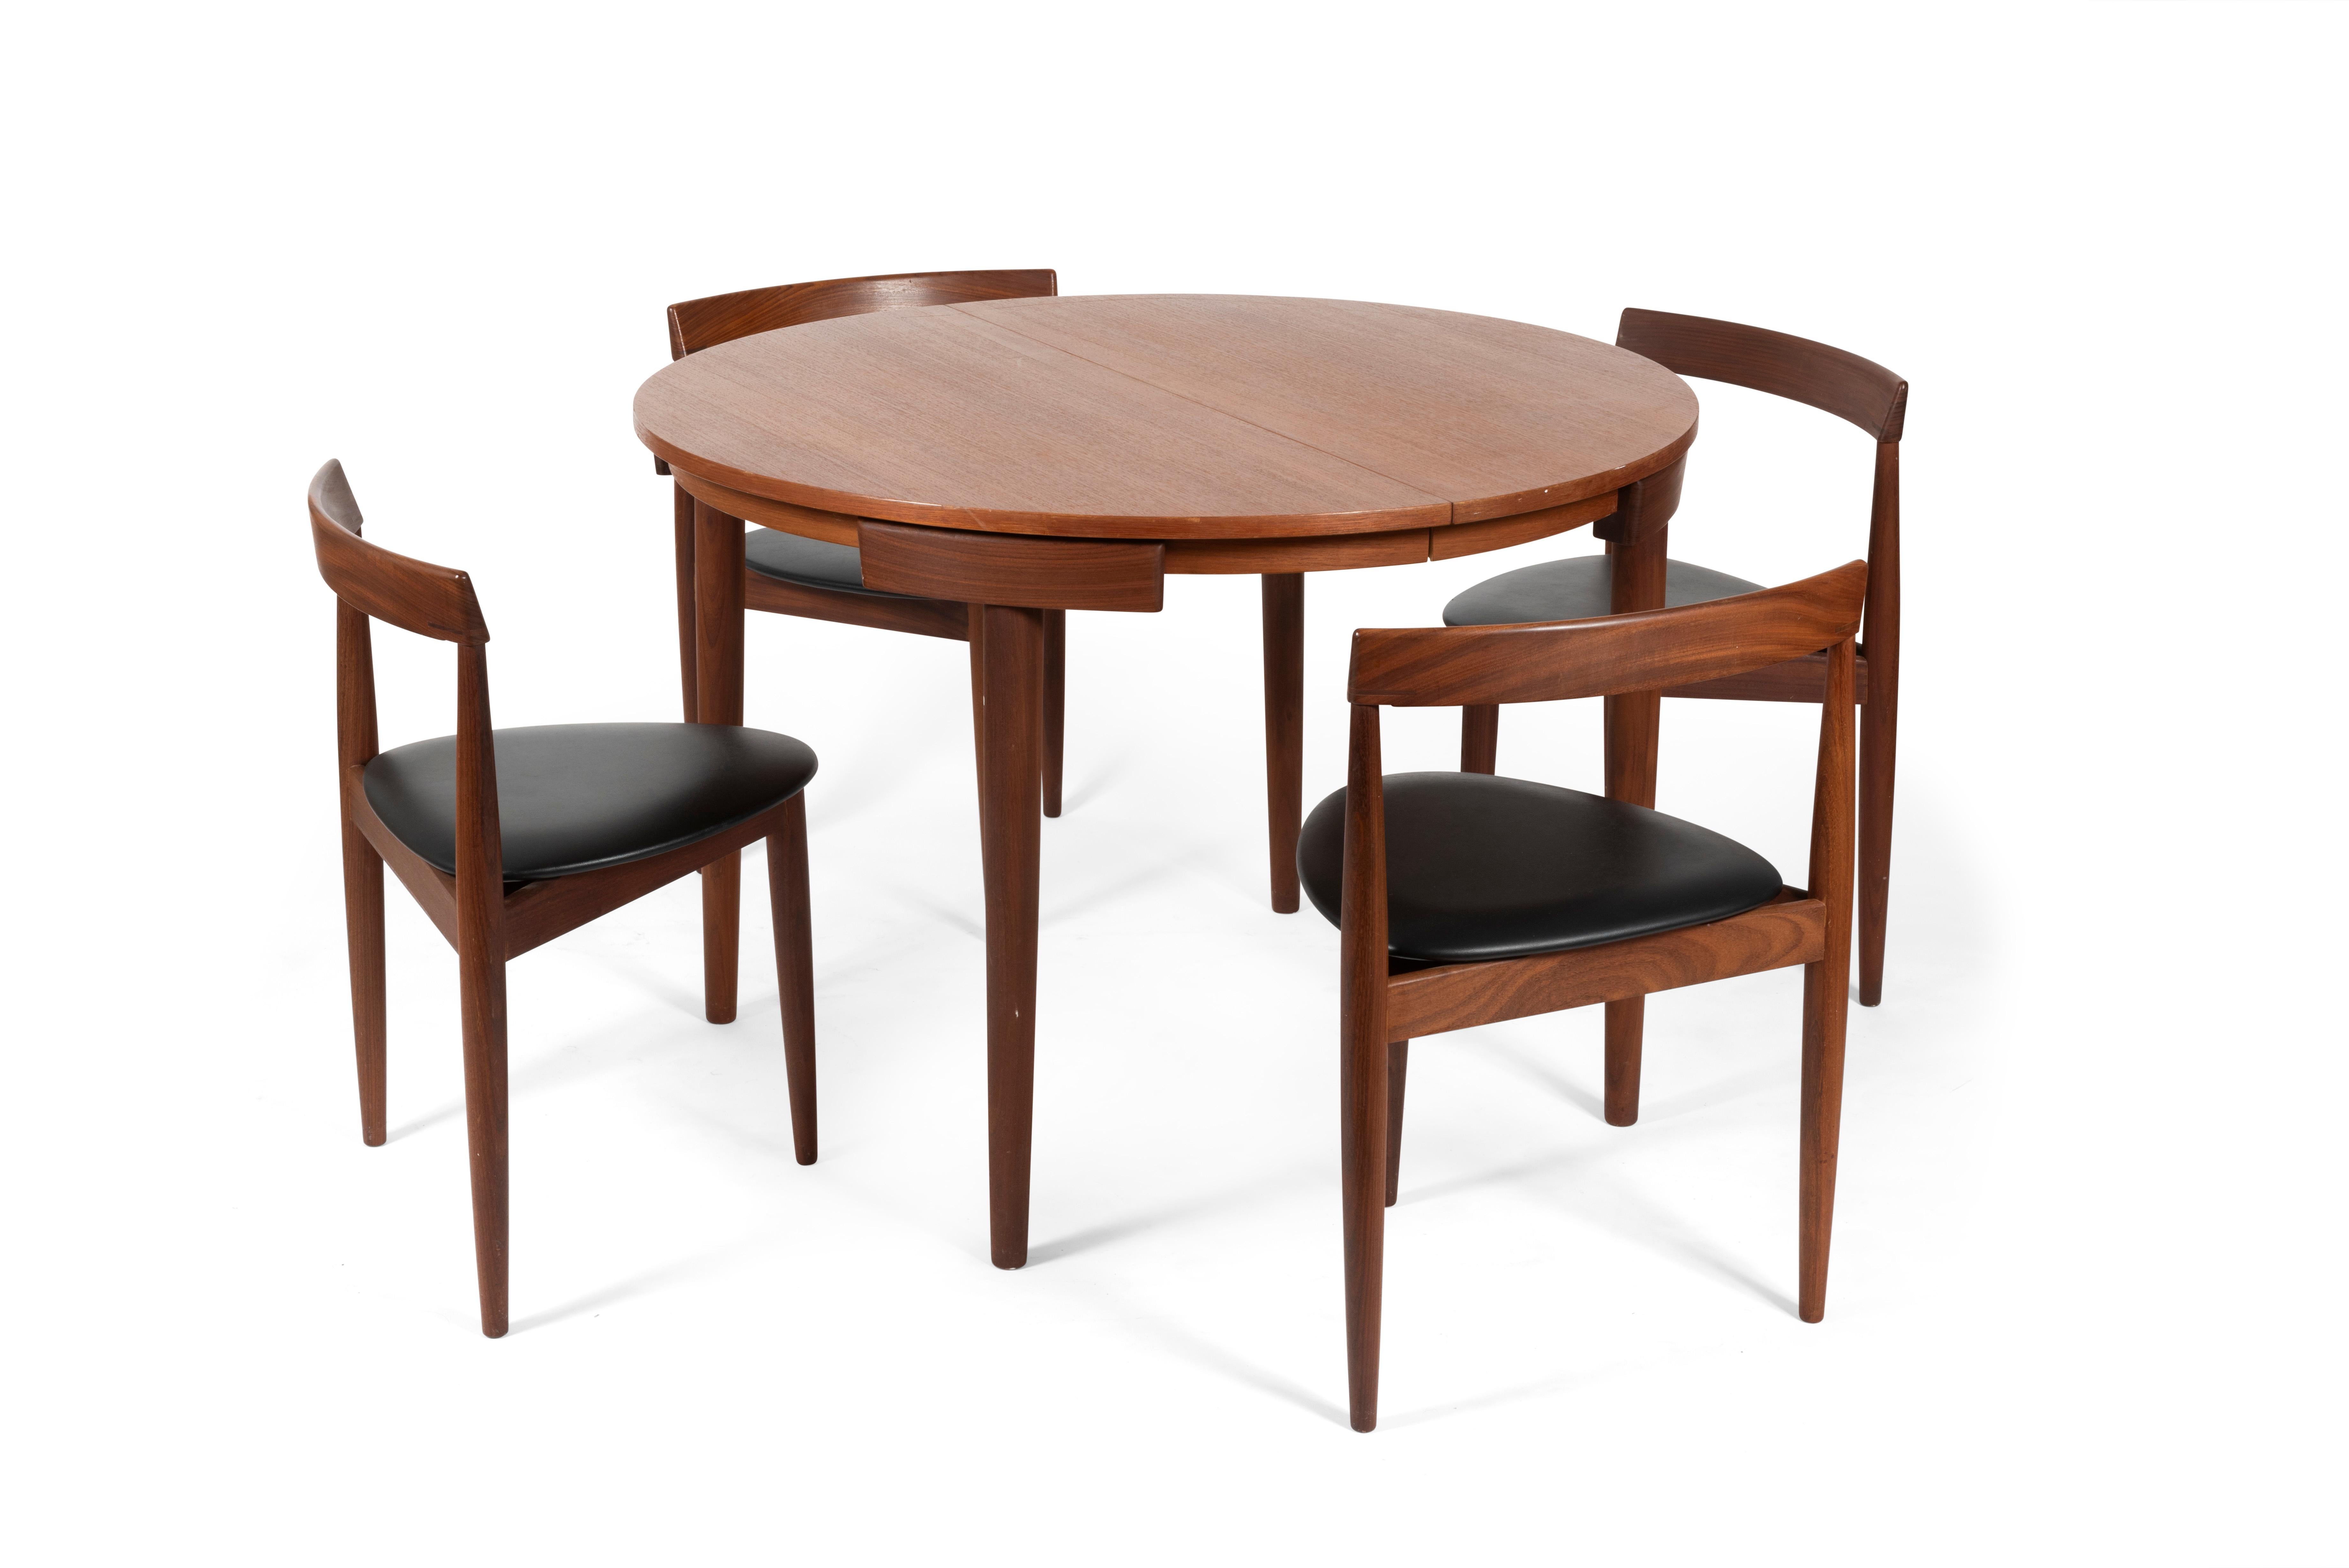 Table de salle à manger avec six chaises fabriquées par Frem Røjle et conçues par Hans Olsen, Danemark, 1950.

Les chaises ont une structure en teck avec un siège triangulaire recouvert de cuir naturel noir et les dossiers s'intègrent parfaitement à